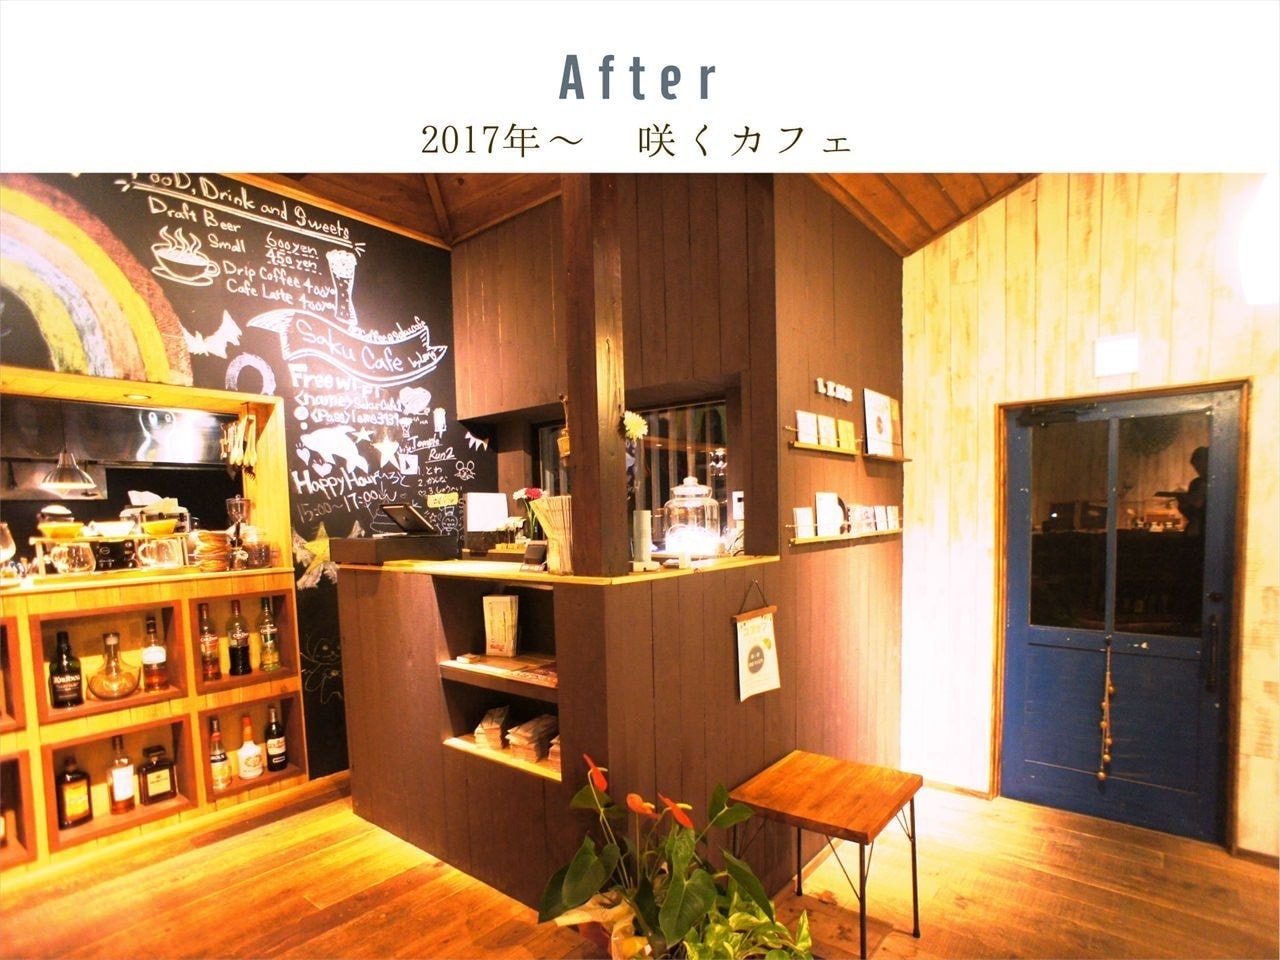 咲くカフェ。茨城・県北、奥久慈大子のカフェ＆ゲストハウス。ランチ、ディナー、コーヒー、宿泊。ビフォーアフター写真キャッシャー。